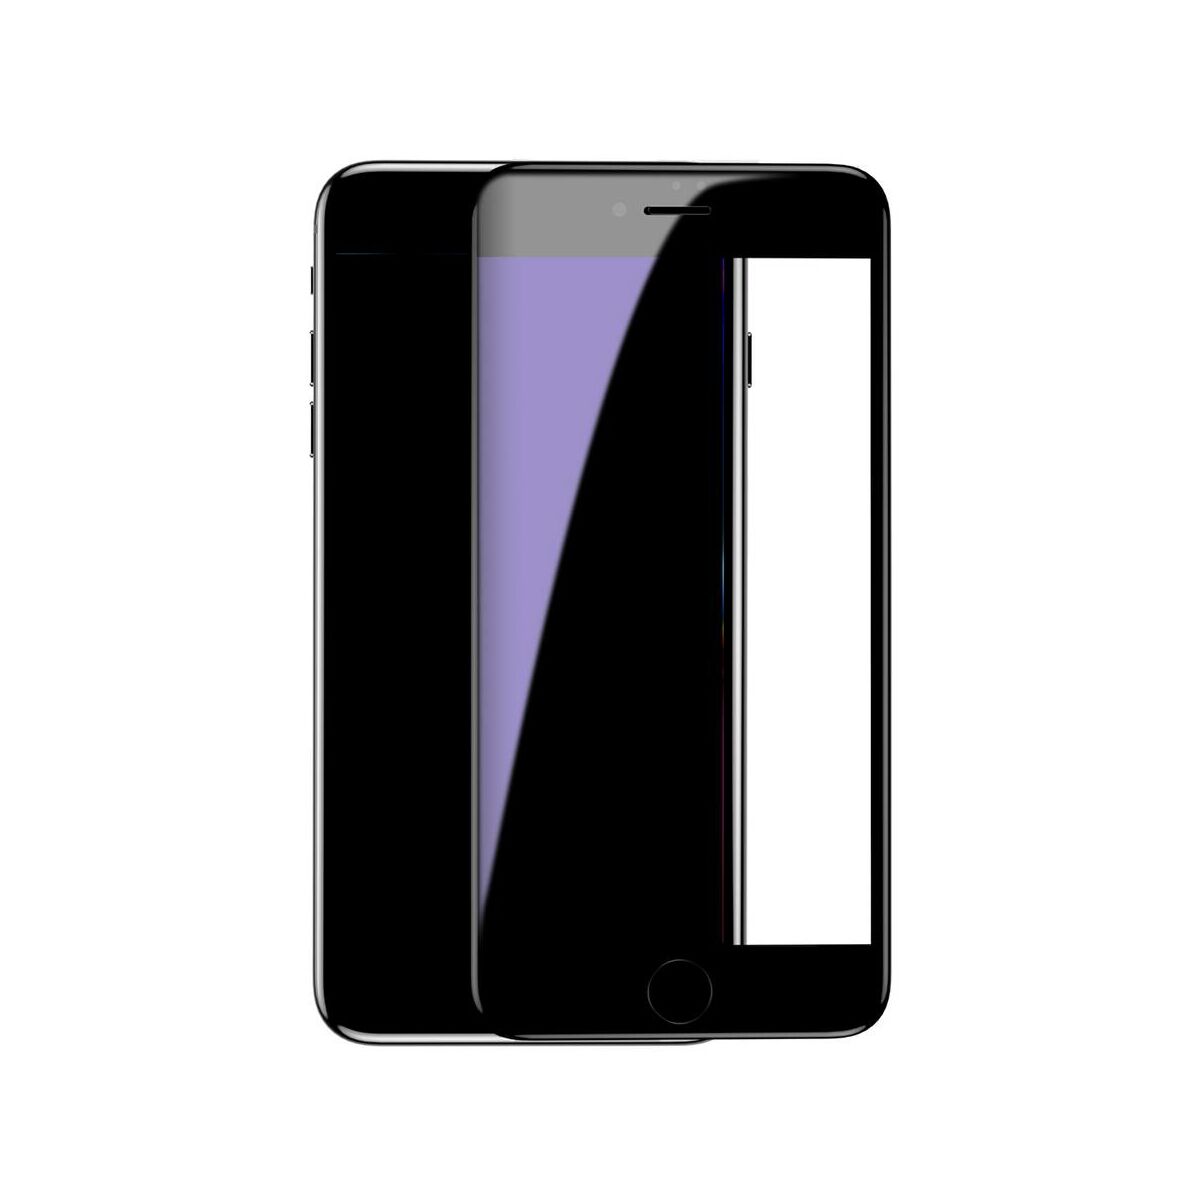 Kép 3/9 - Baseus iPhone 8/7 0.3 mm, teljes felületre kékfény szűrős edzett üveg kijelzővédő fólia, fekete (SGAPIPH8N-KB01)